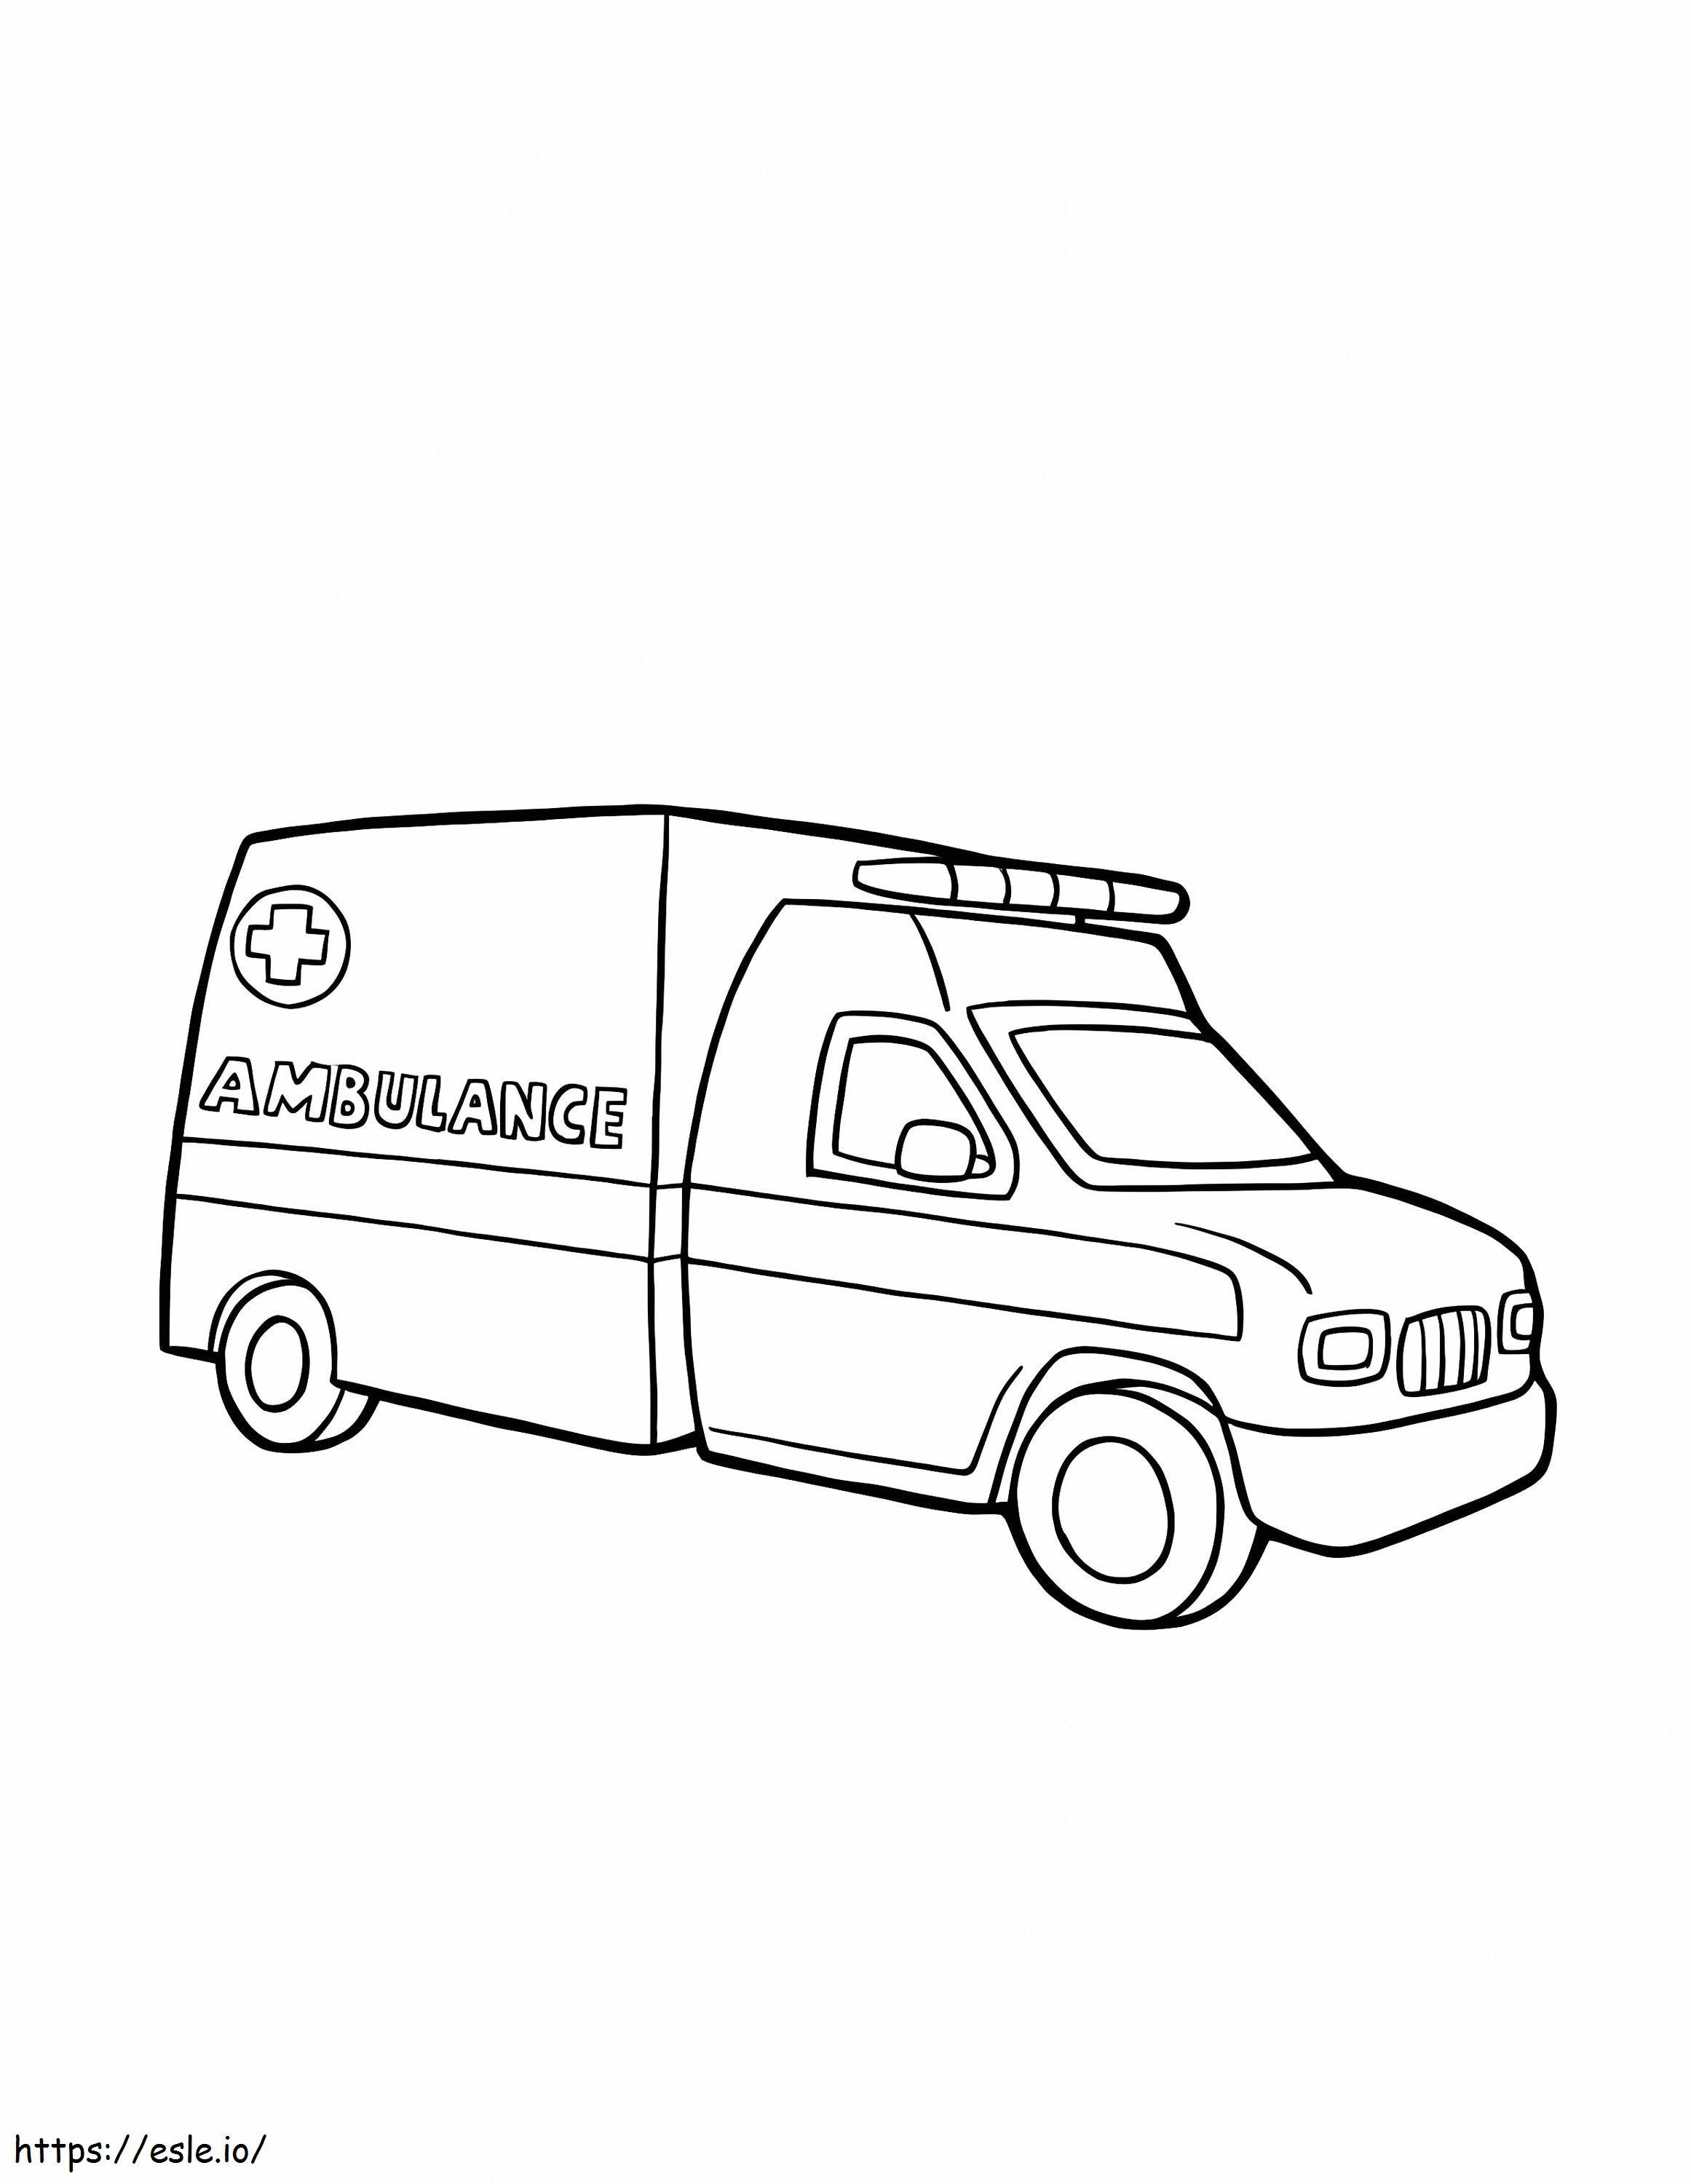 Ambulance 10 coloring page